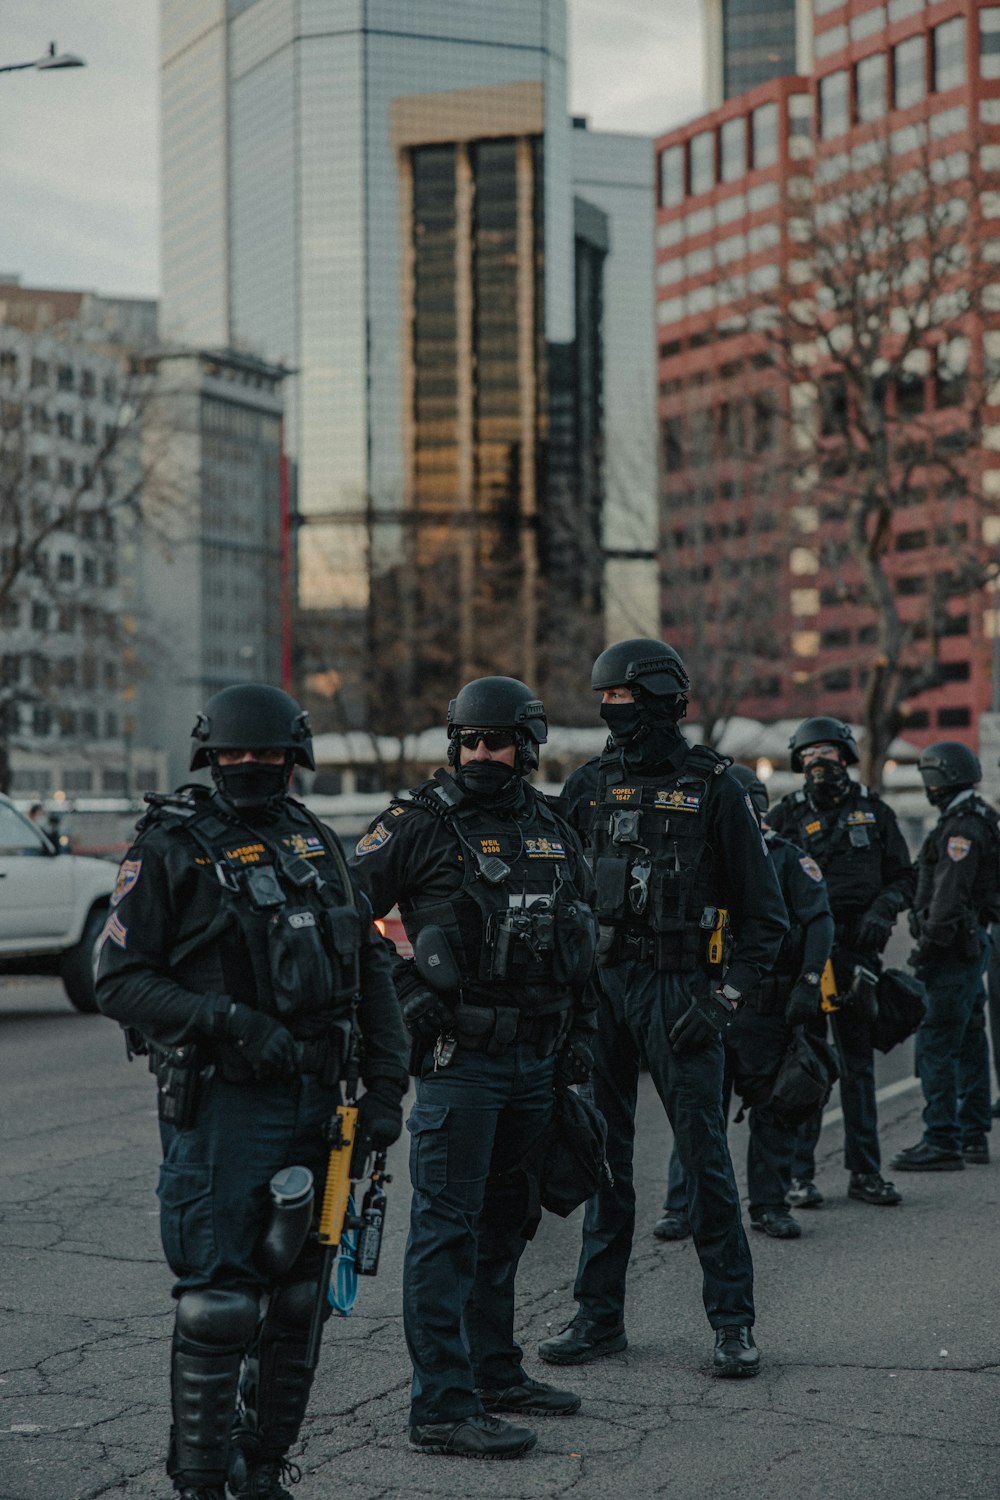 Gruppe von Männern in schwarz-gelber Uniform, die tagsüber auf der Straße stehen